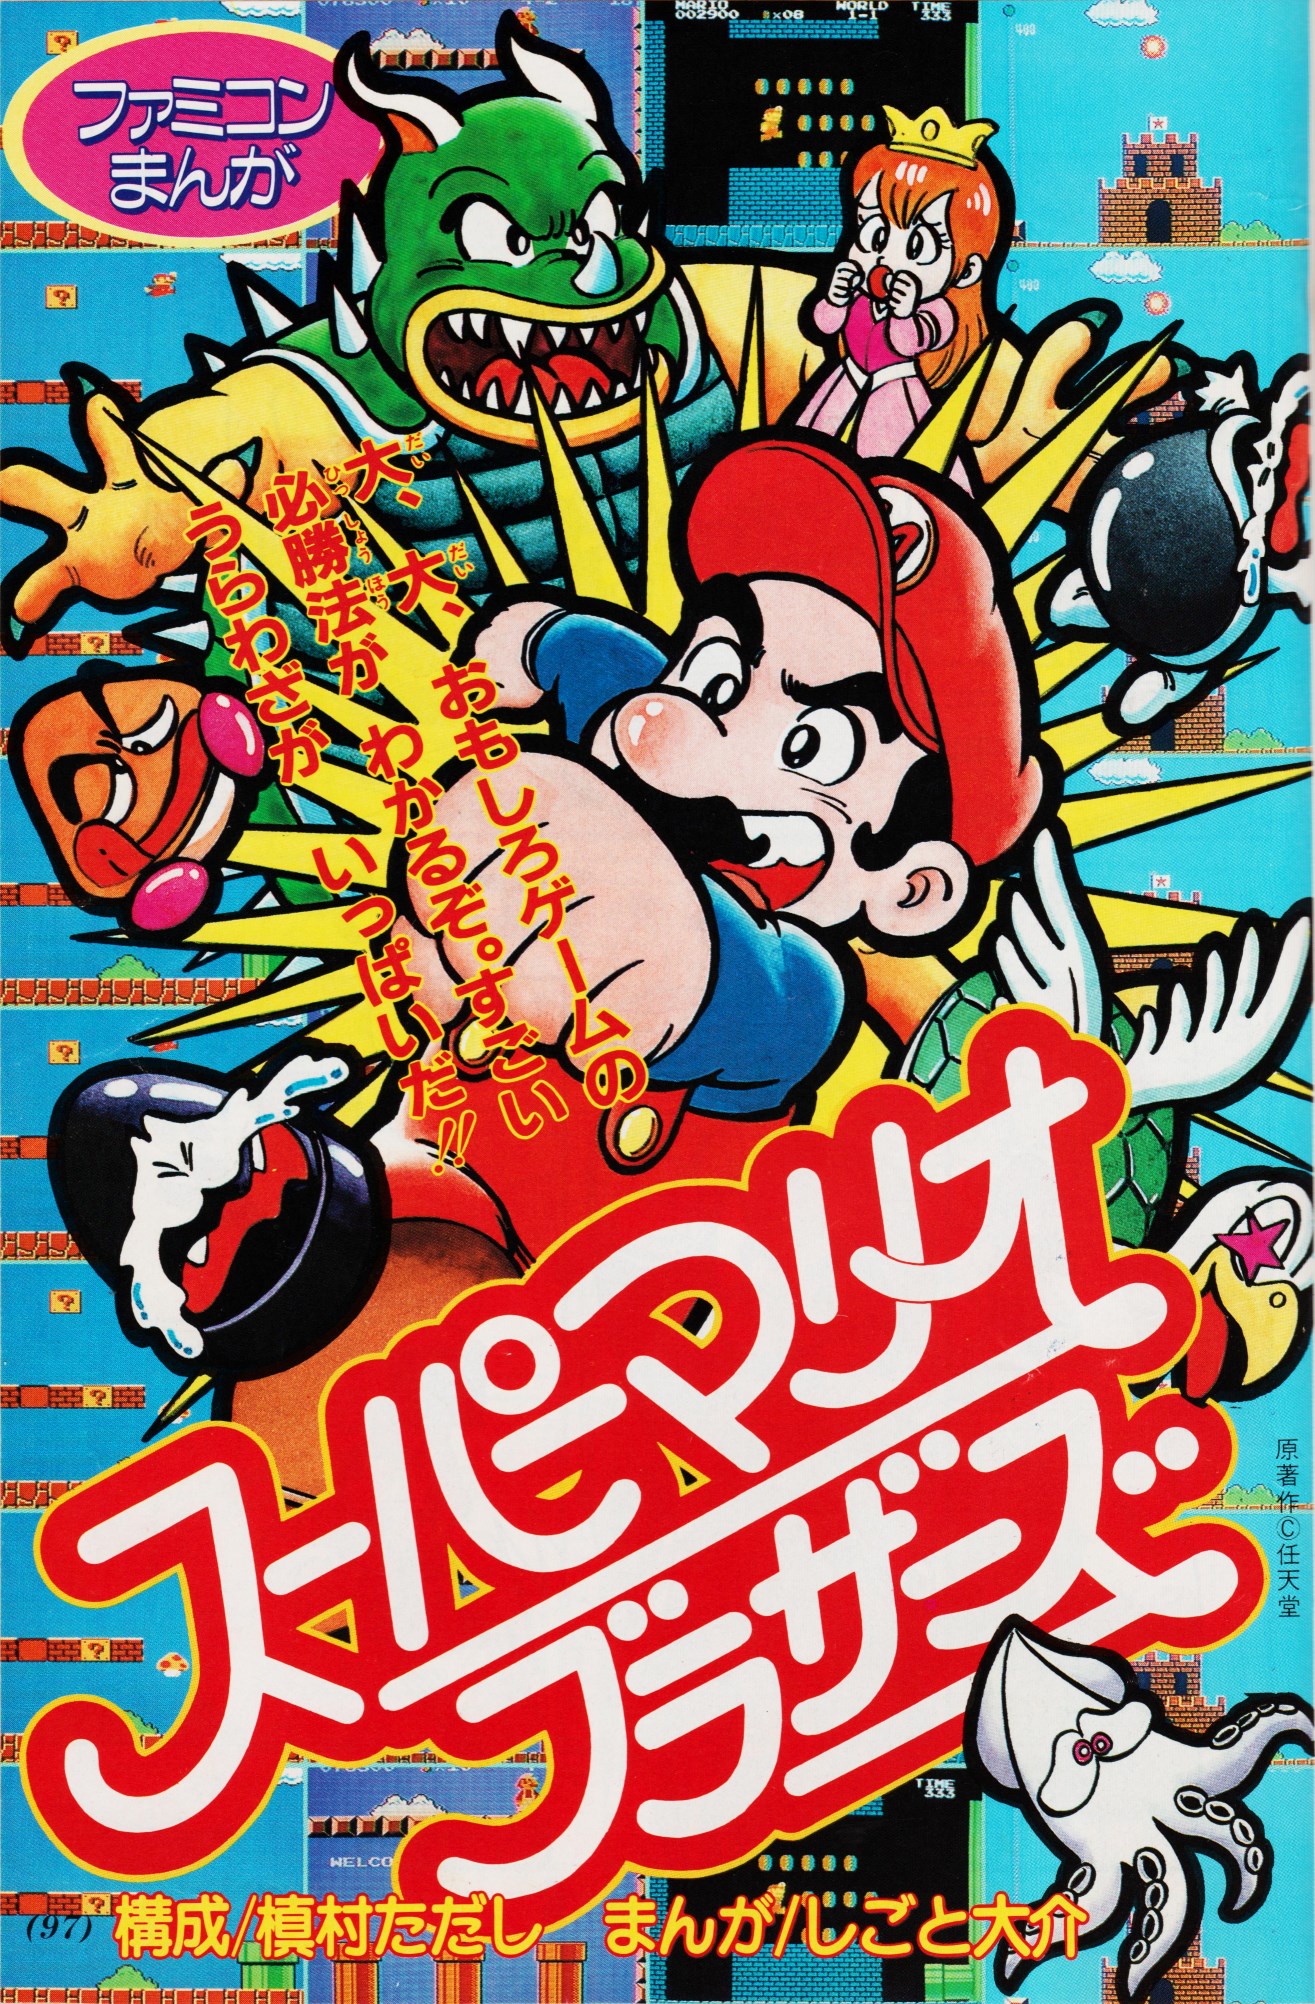 NES Manga: Super Mario Bros.